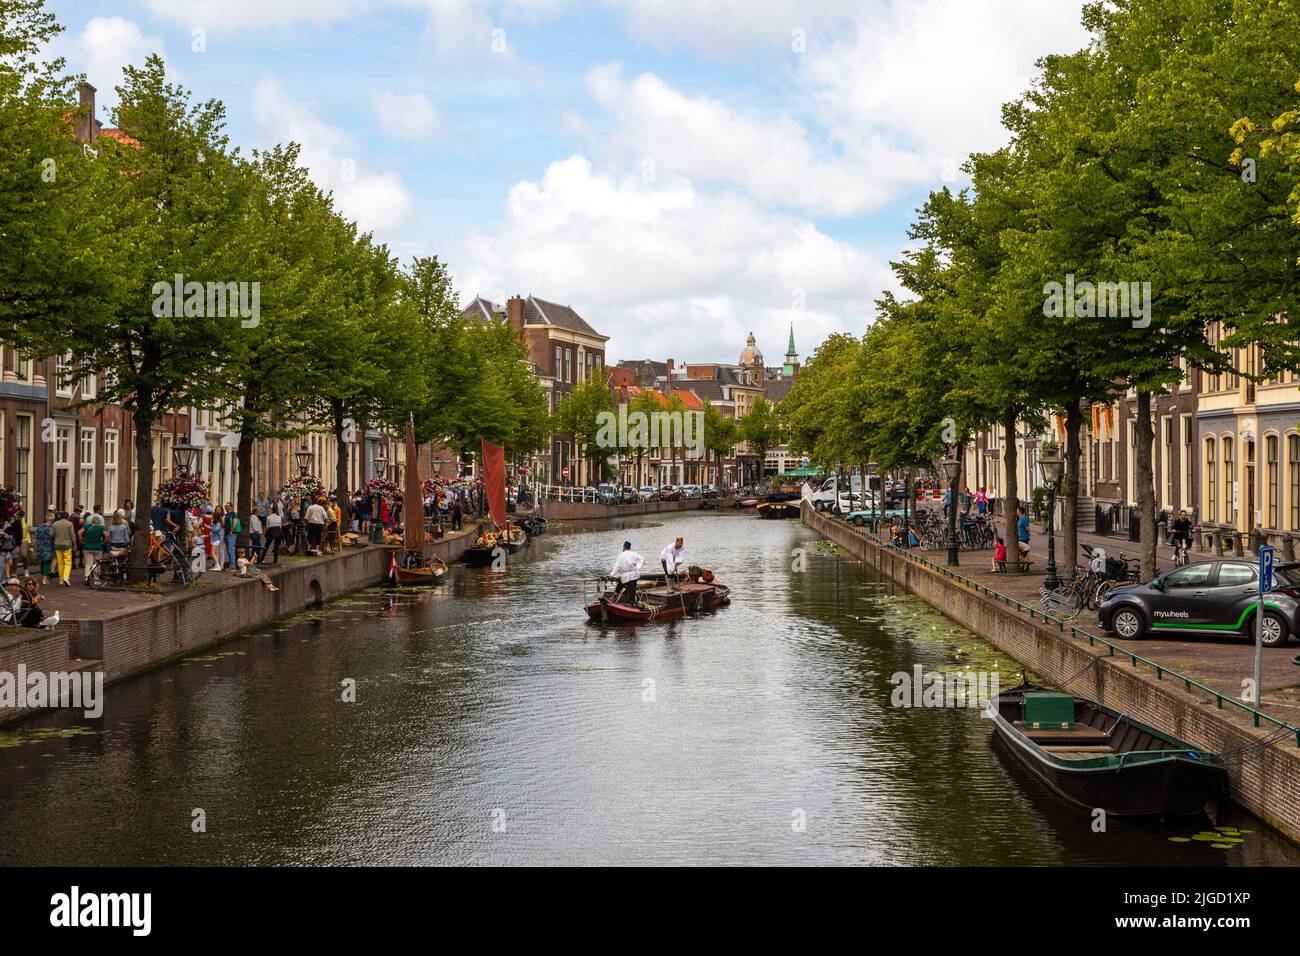 Rapenburg, Leiden, Holanda del Sur, Holanda  festival de recreación de Rembrandt van Rijn, sus pinturas y su época, atrayendo a muchos visitantes. Foto de stock